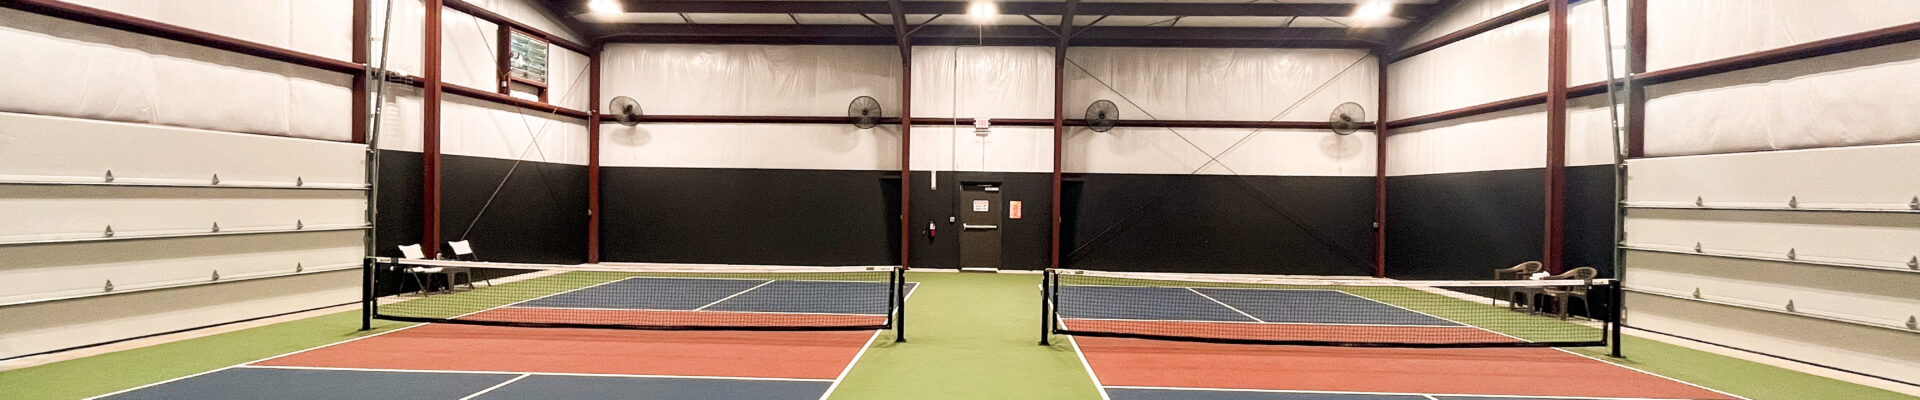 An indoor pickleball court